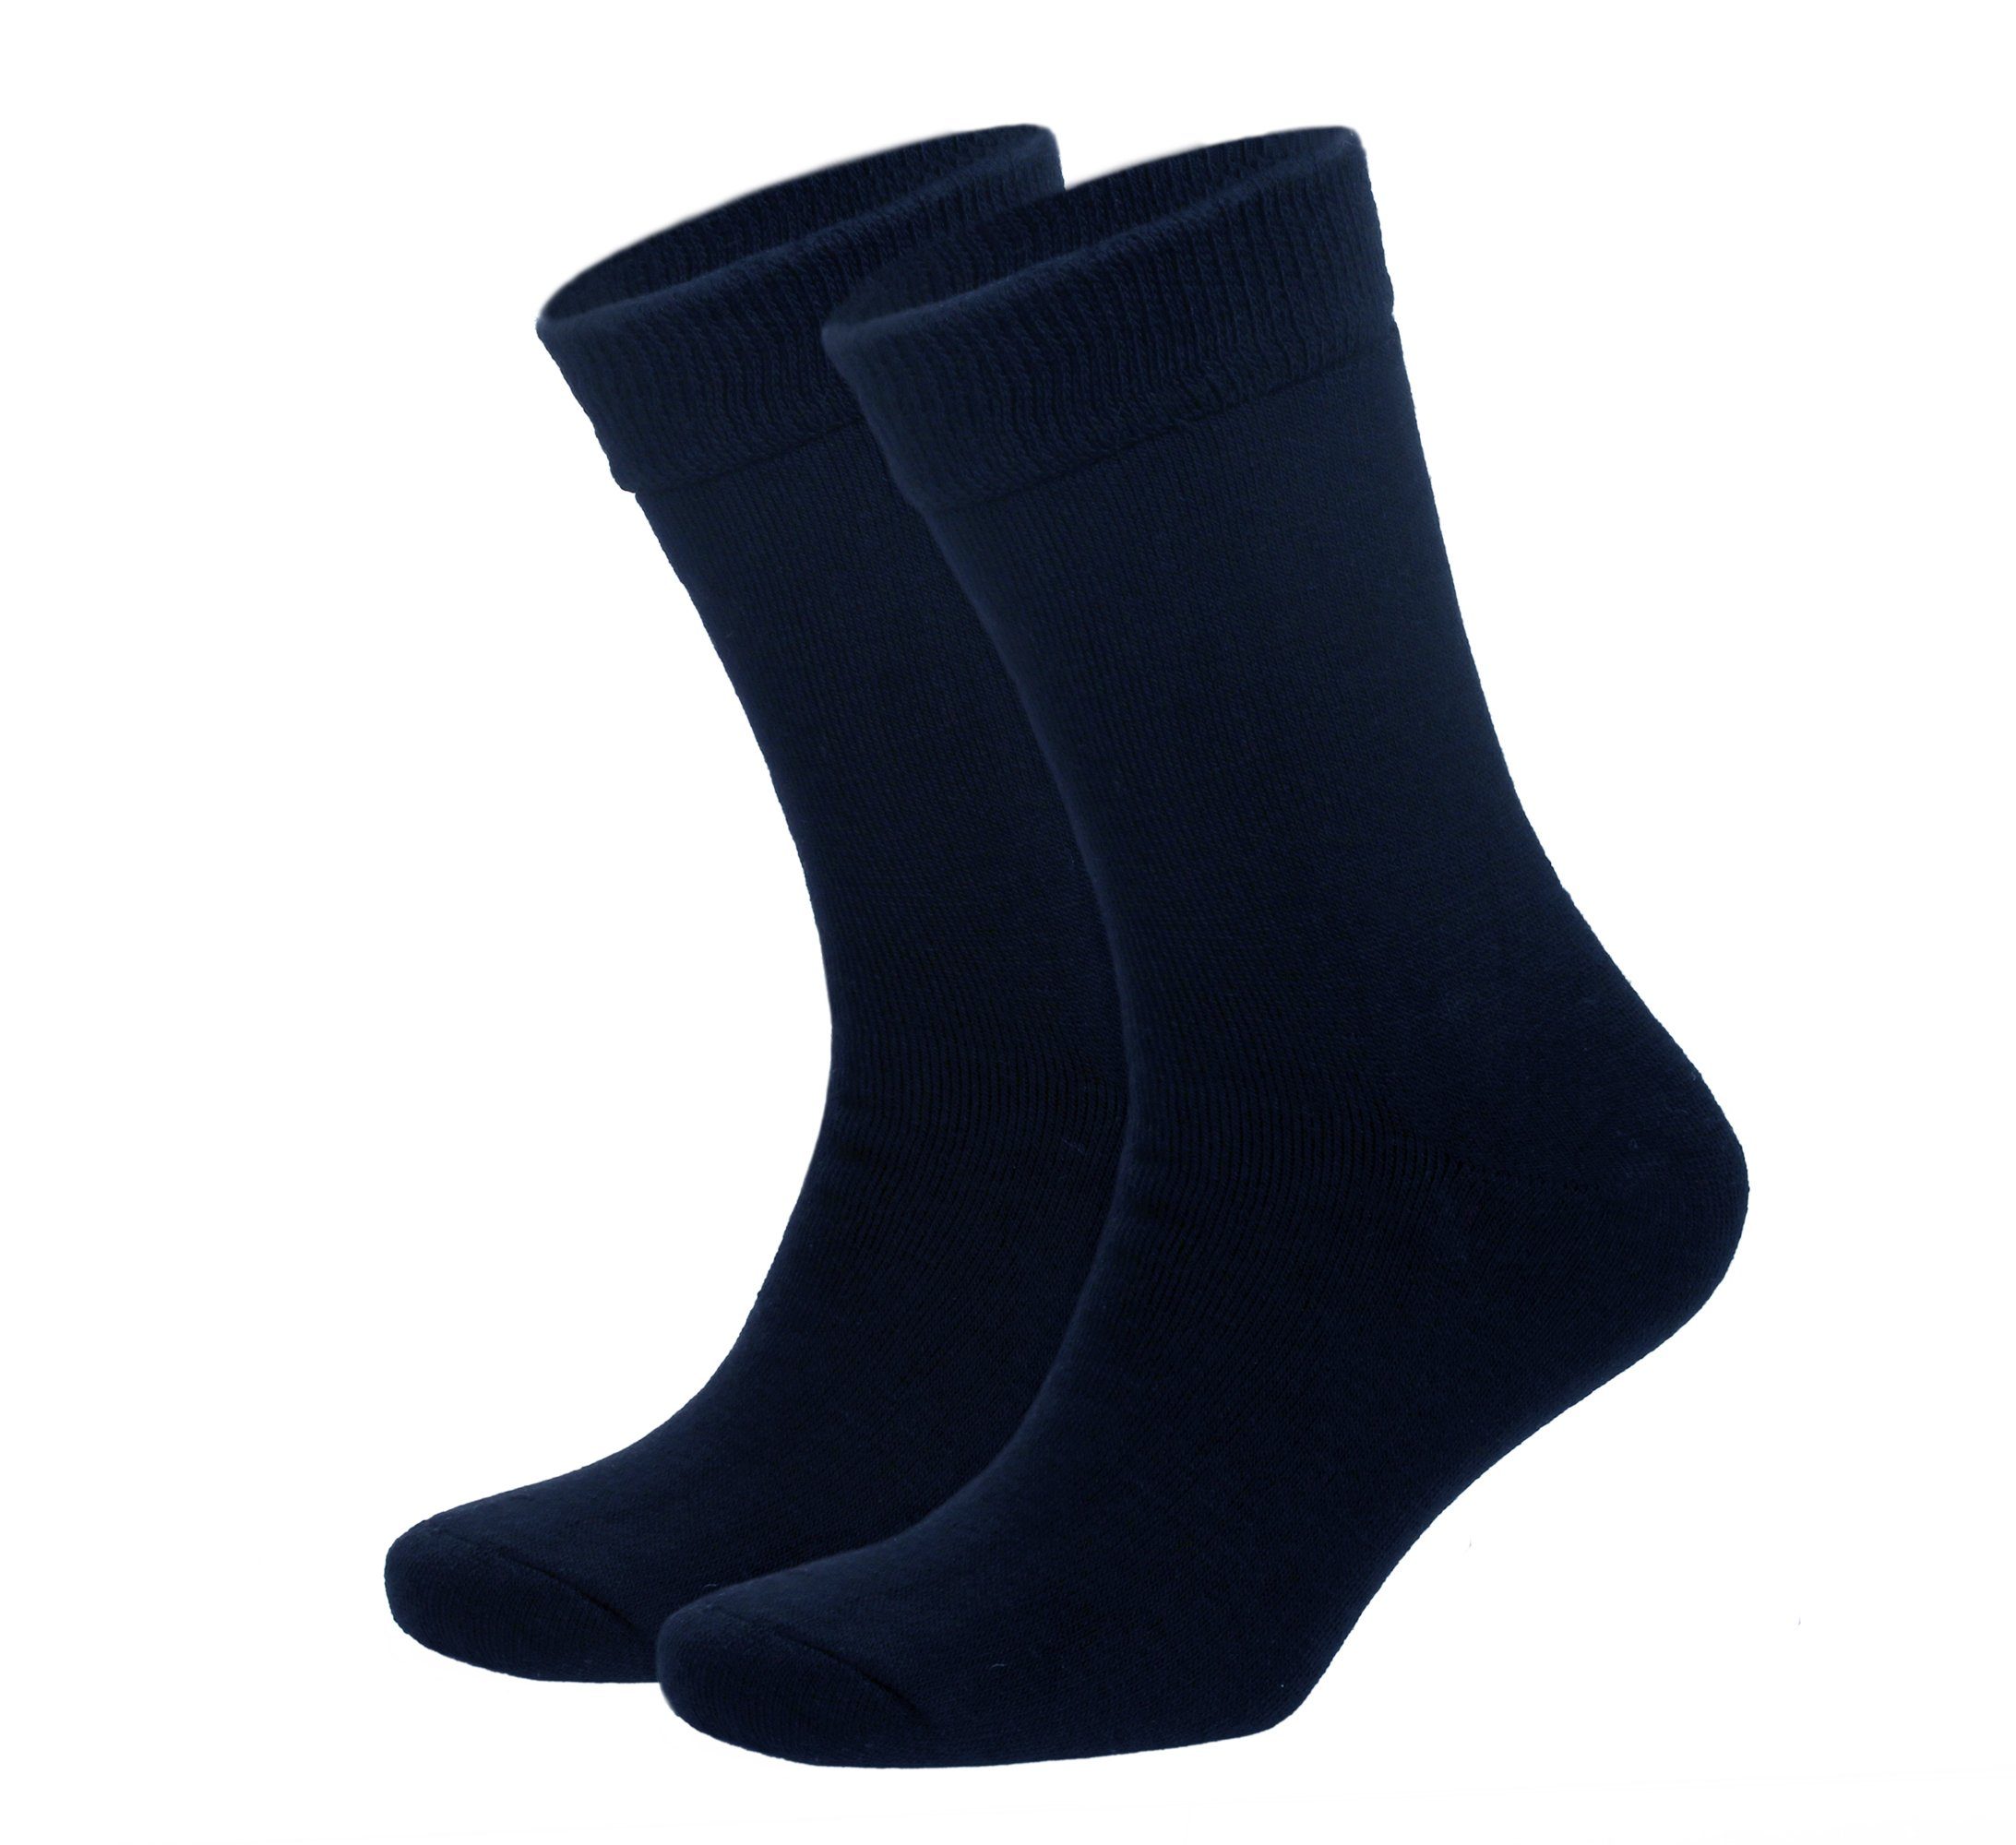 NoblesBox Thermosocken Herren Wintersocken (Beutel, 2-Paar, 41-46 EU Größe) Herren Warme Socken, Herren Arbeitssocken Blau | Wandersocken